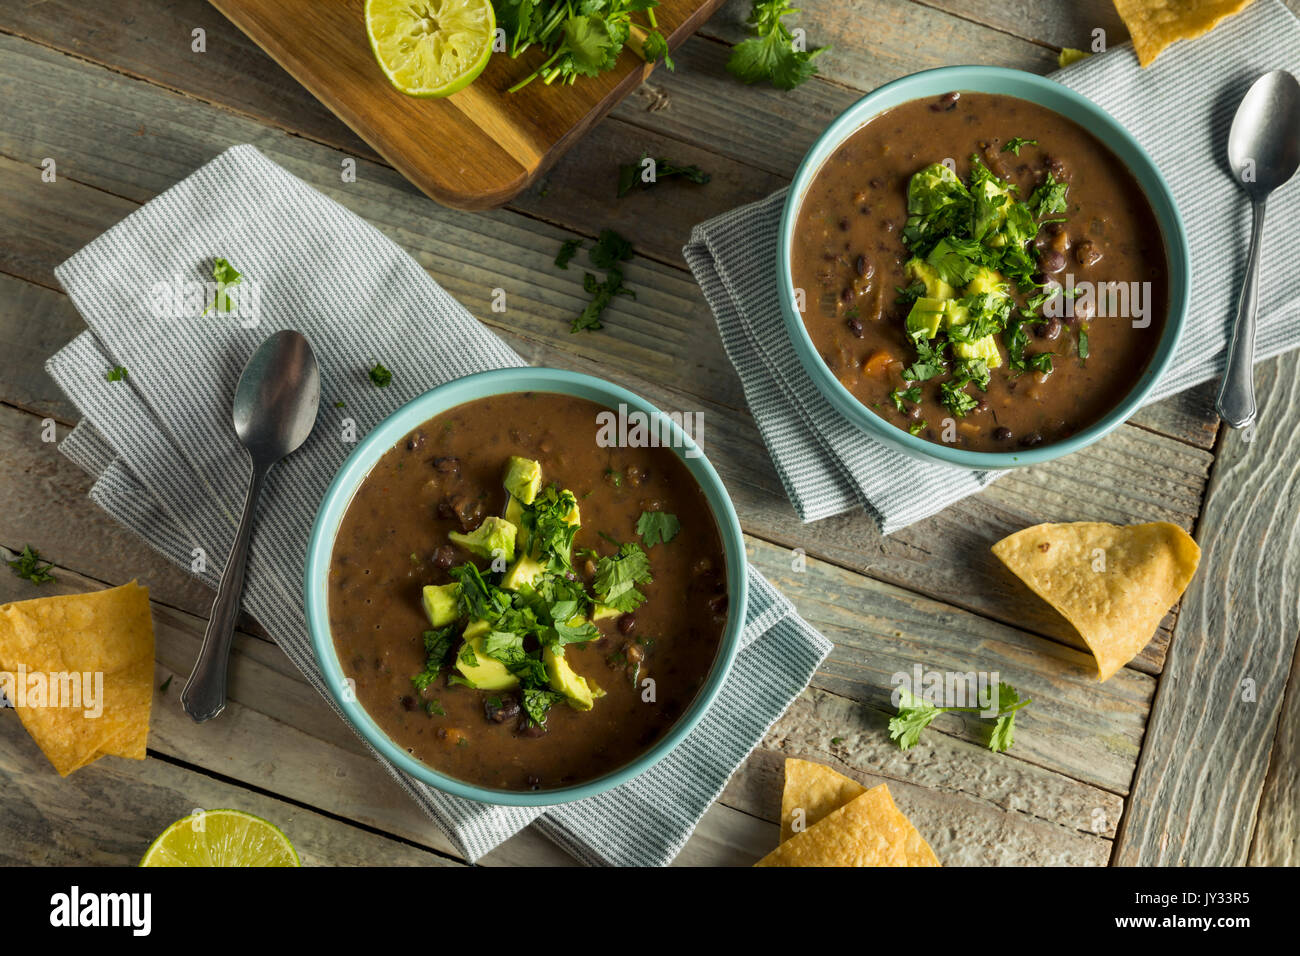 Fresh Homemade Black Bean Soup with Avocado and Cilantro Stock Photo